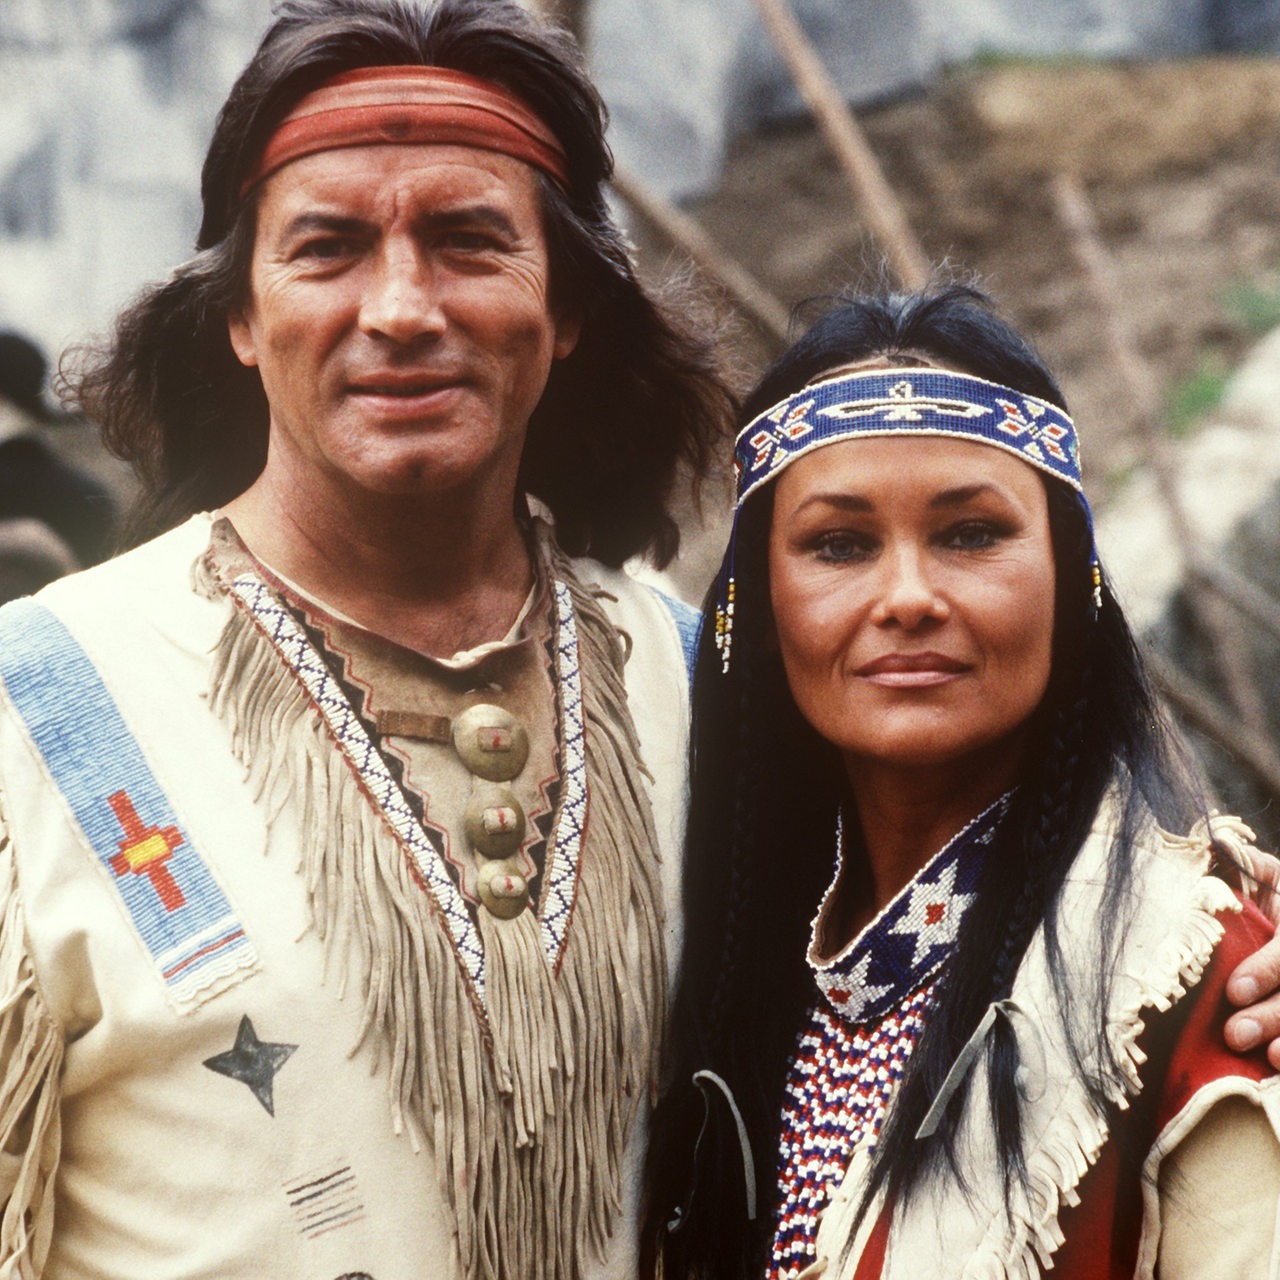  Pierre Brice als Indianerhäuptling Winnetou posiert mit seiner Ehefrau Hella Brice, die die Indianerin Hi-Lah-Di bei den Karl-May-Festspielen in Bad Segeberg spielt.